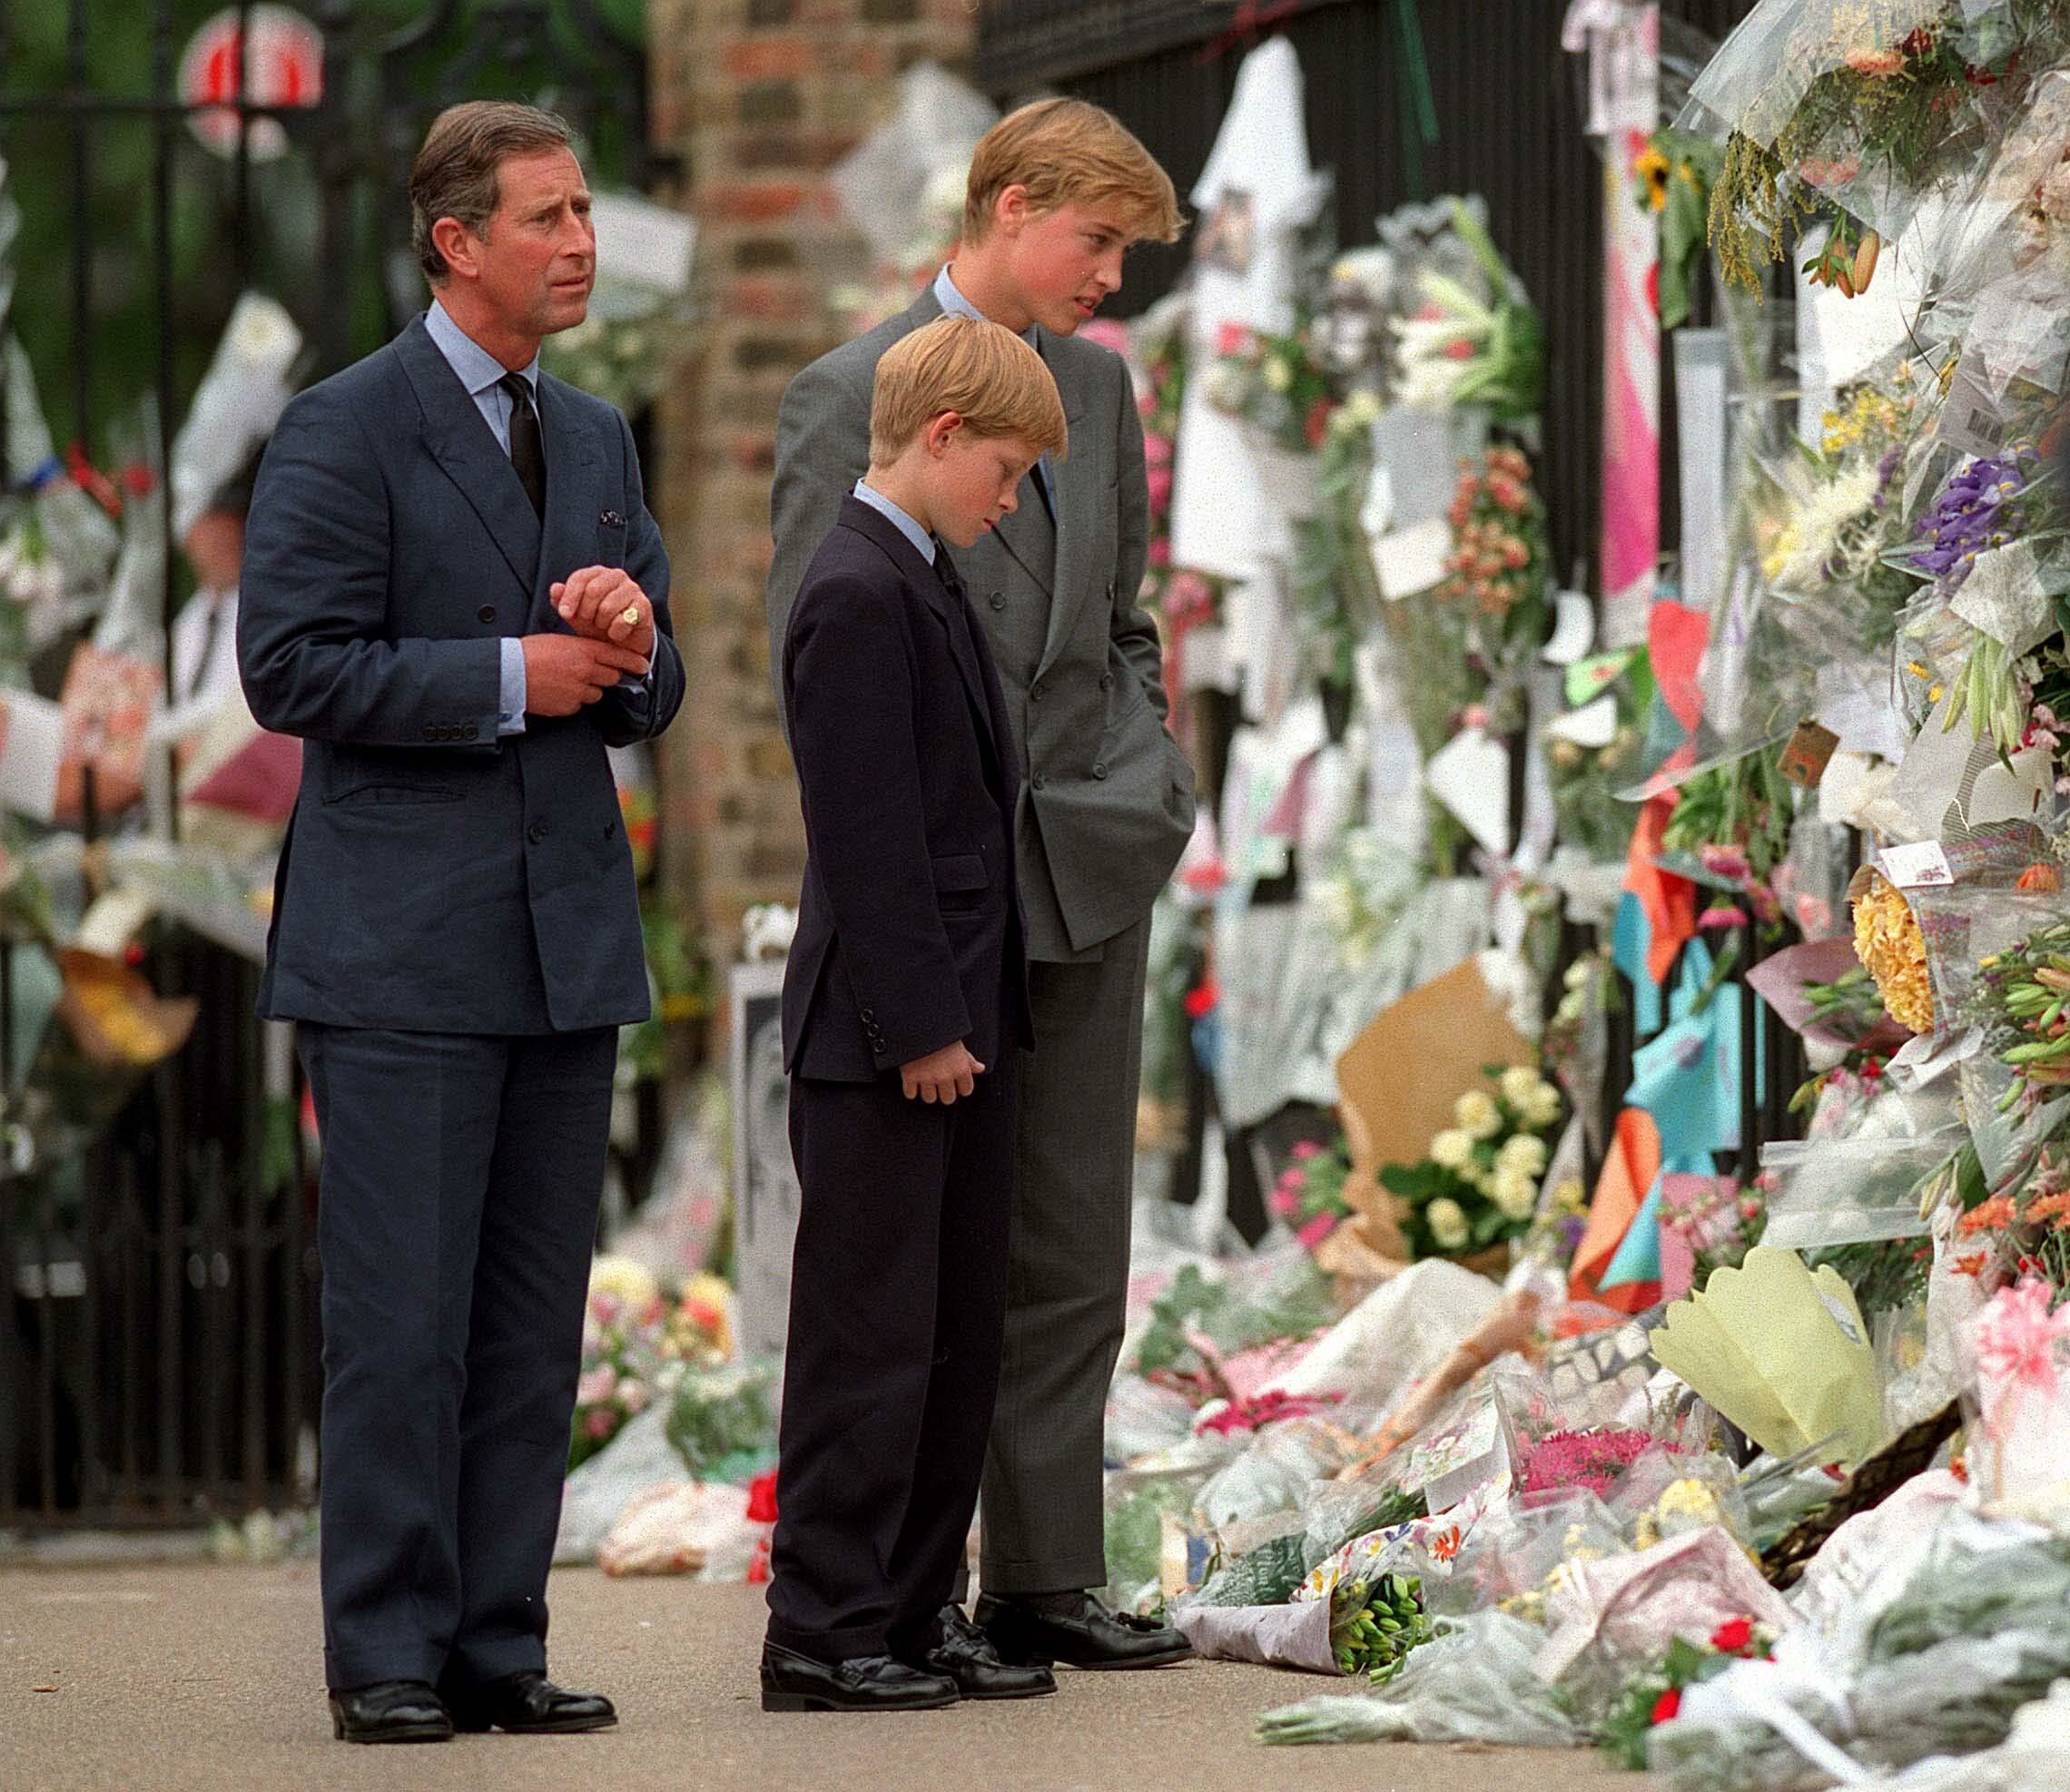 Le Prince de Galles, le Prince William et le Prince Harry regardent les hommages floraux à Diana, Princesse de Galles devant le Palais de Kensington le 5 septembre 1997 à Londres, Angleterre. | Source : Anwar Hussein/Getty Images